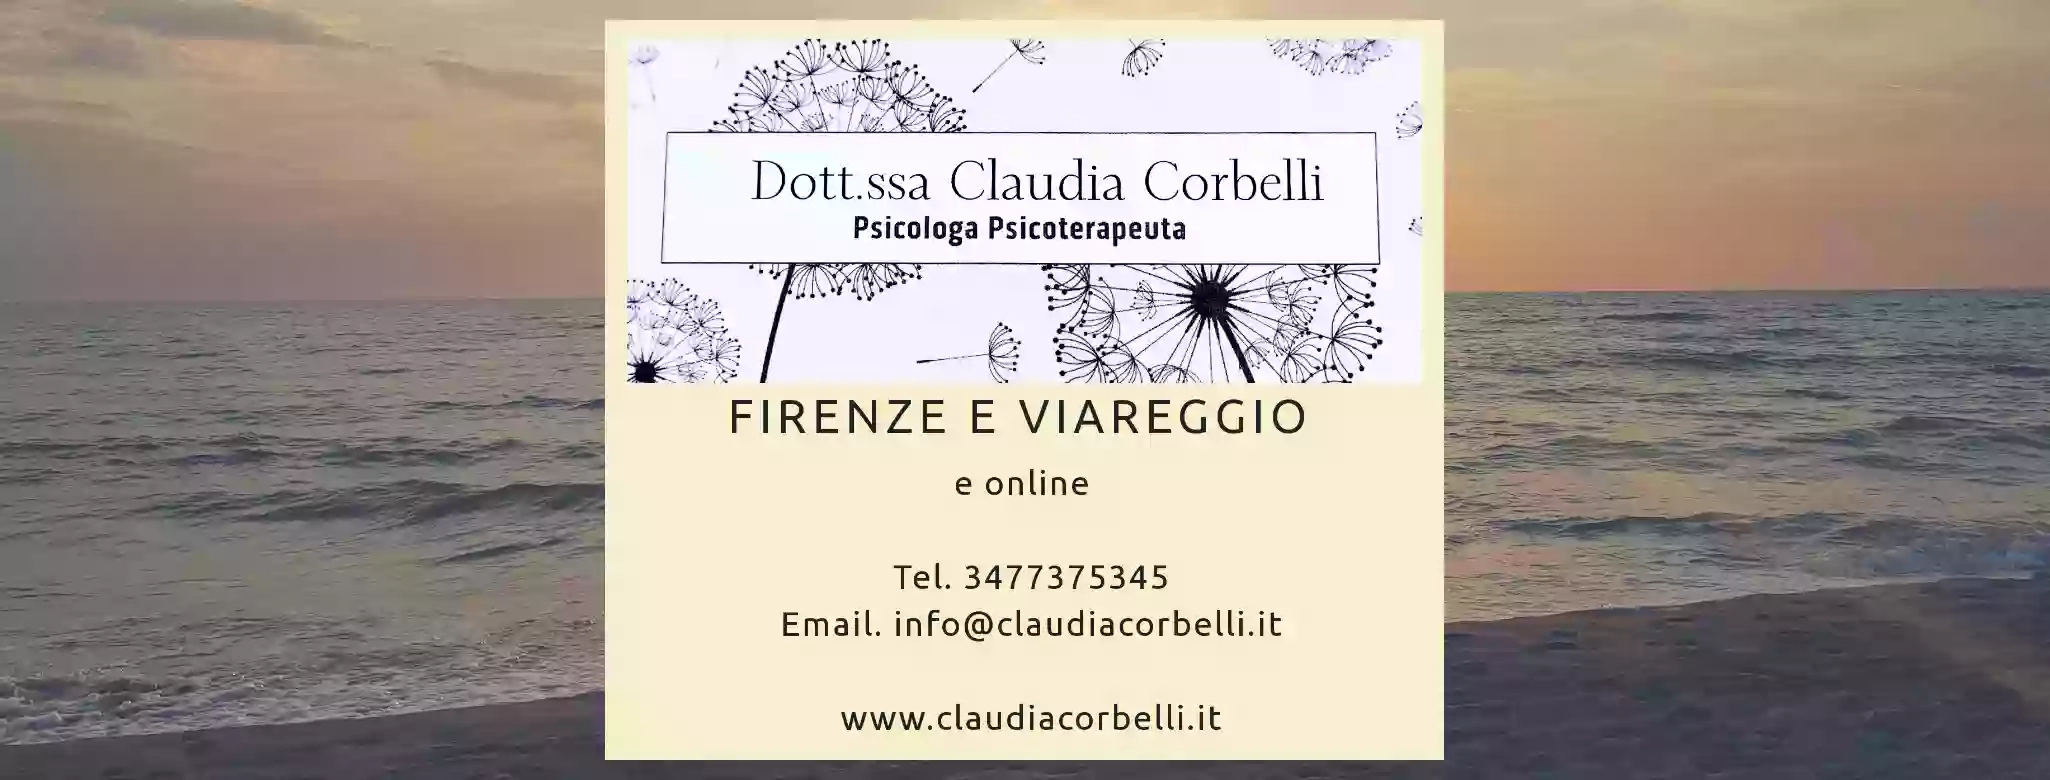 Dott.ssa Claudia Corbelli - Psicologa Psicoterapeuta Firenze